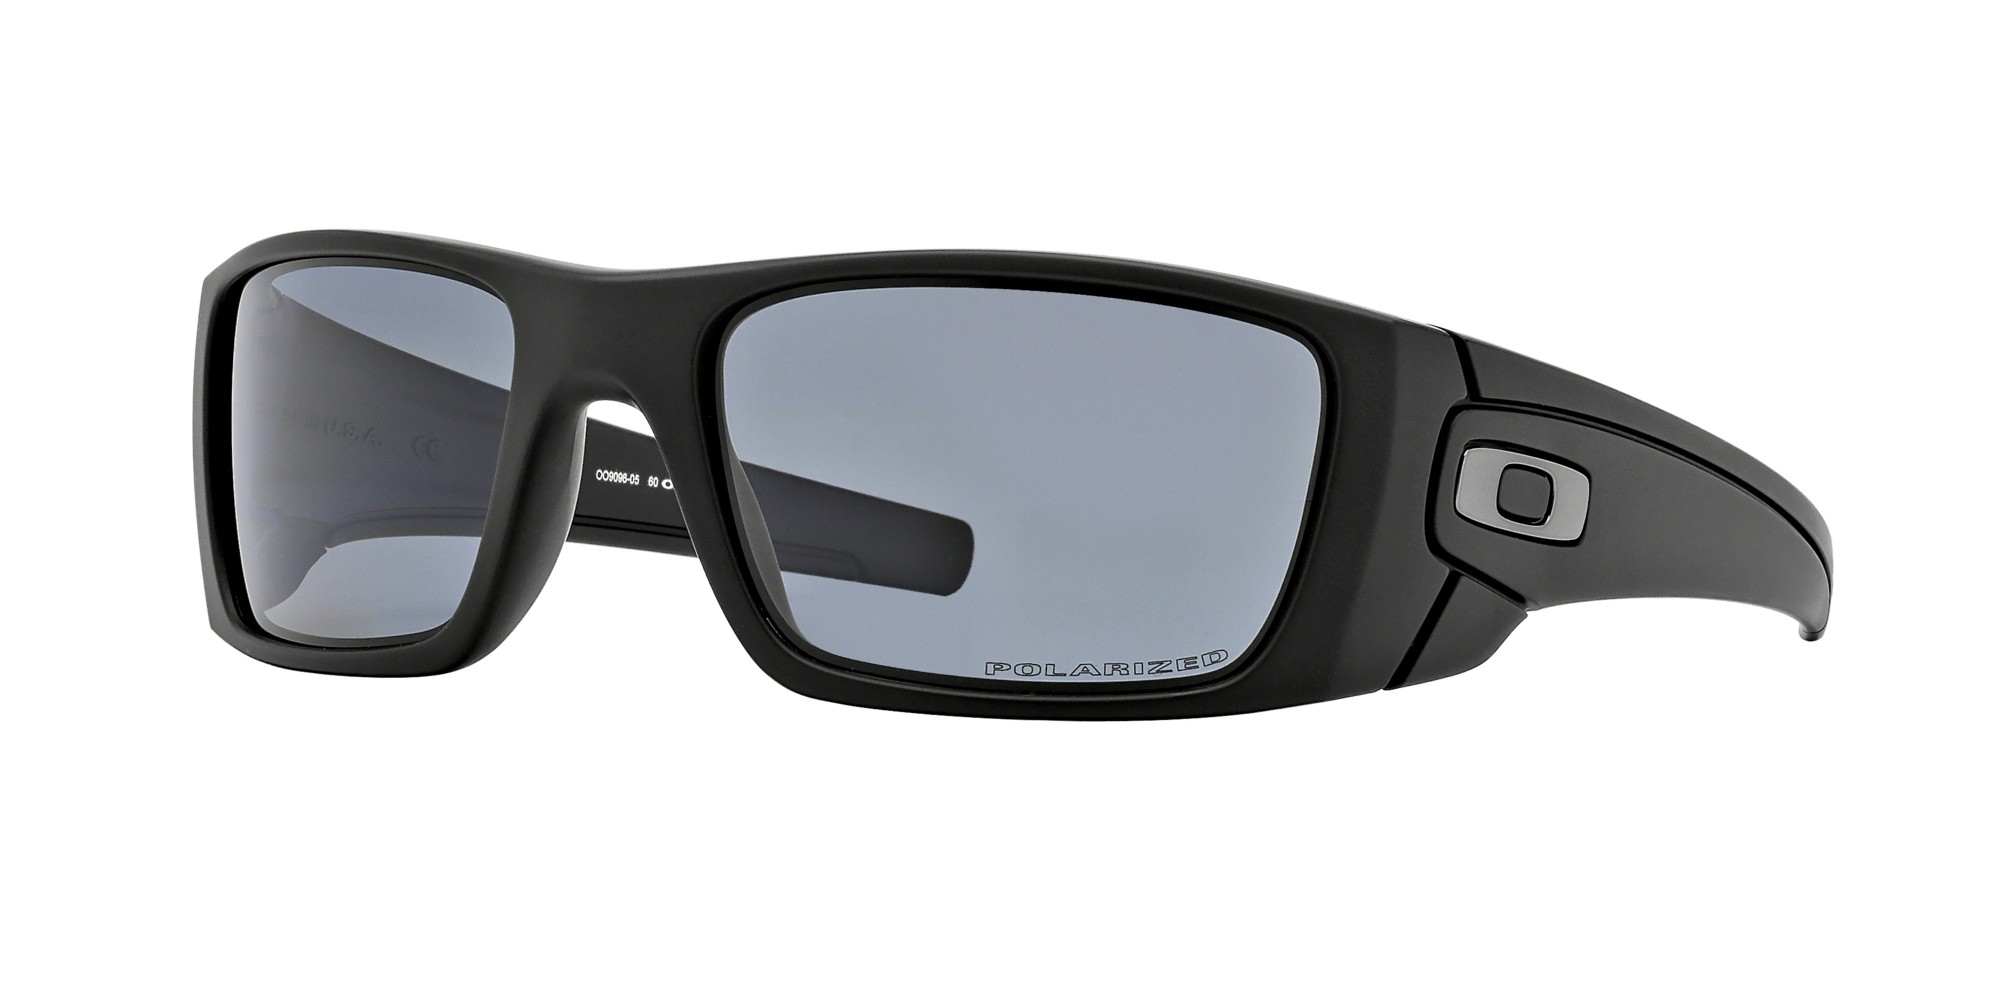 Authentic Oakley Fuel Cell Prescription Sunglasses